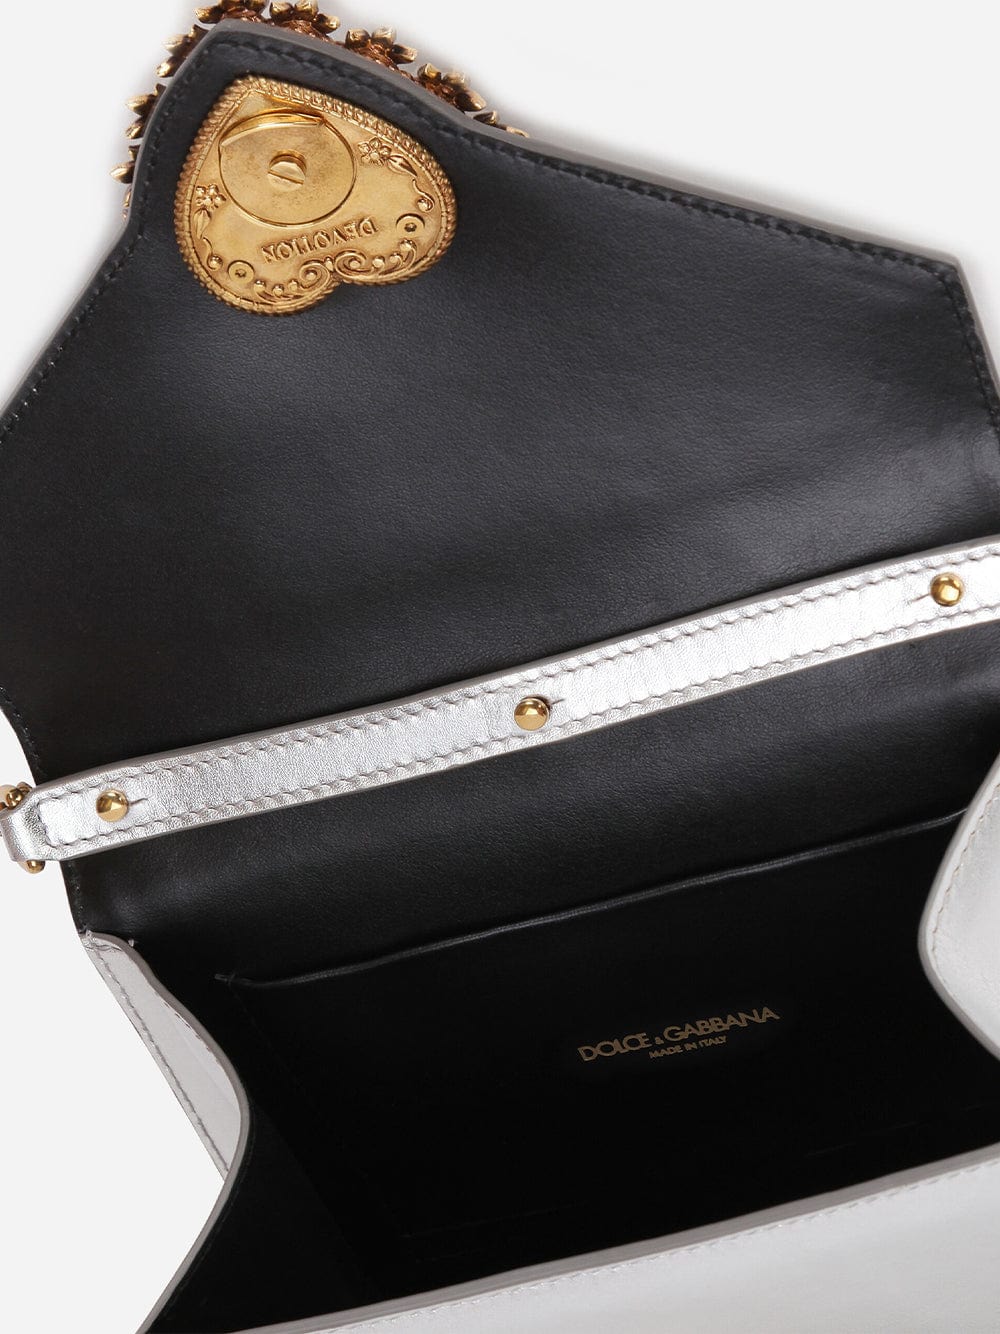 Dolce & Gabbana Small Devotion Mordore Bag